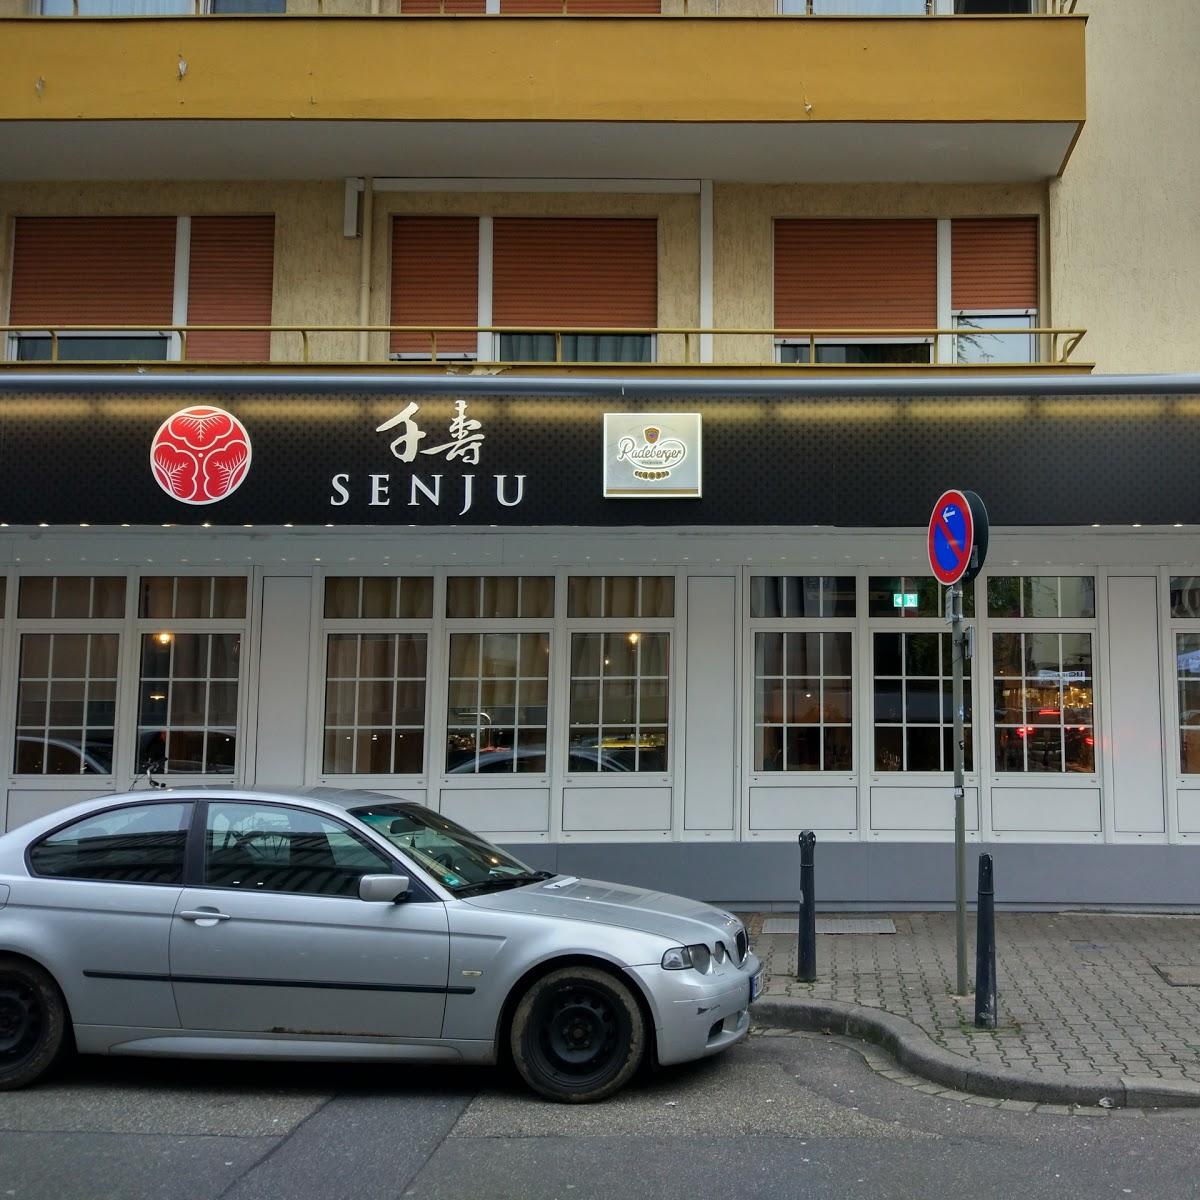 Restaurant "Senju Restaurant" in  Mannheim